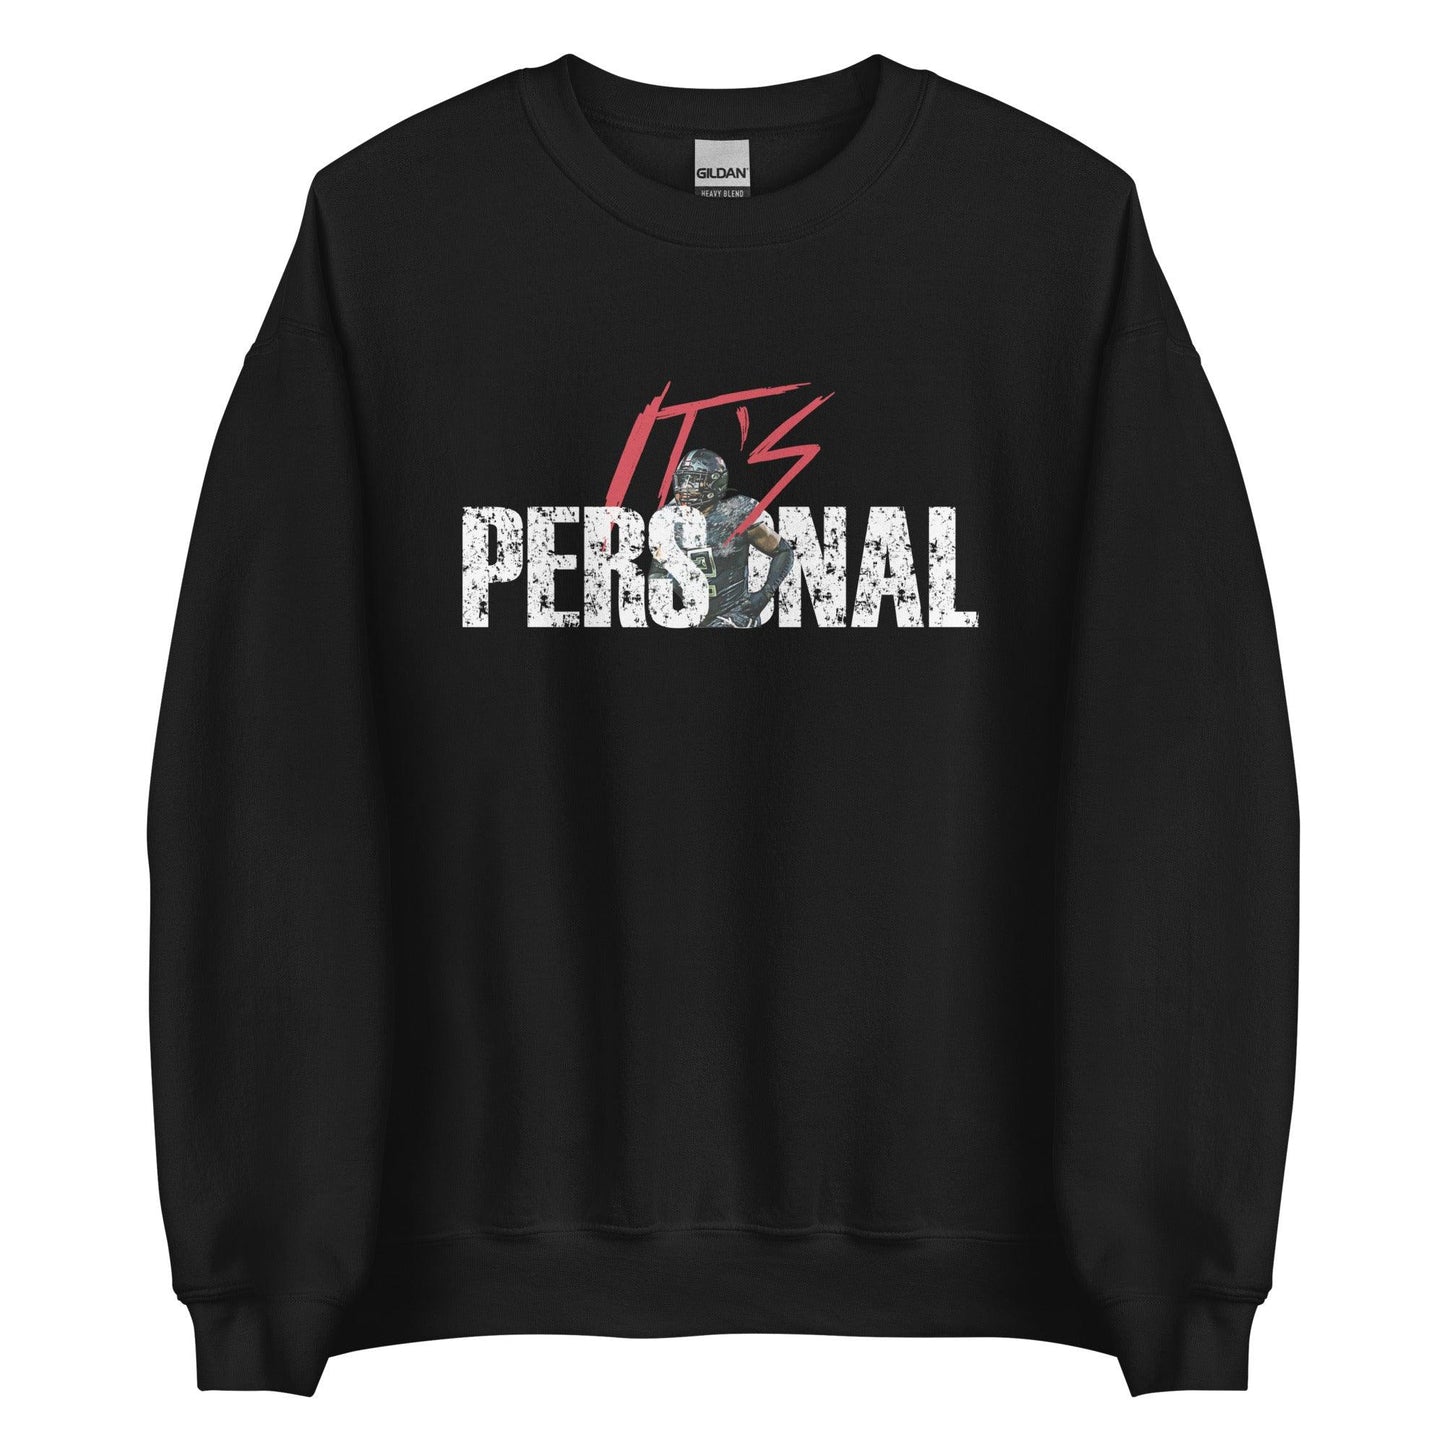 Kailon Davis "Its Personal" Sweatshirt - Fan Arch